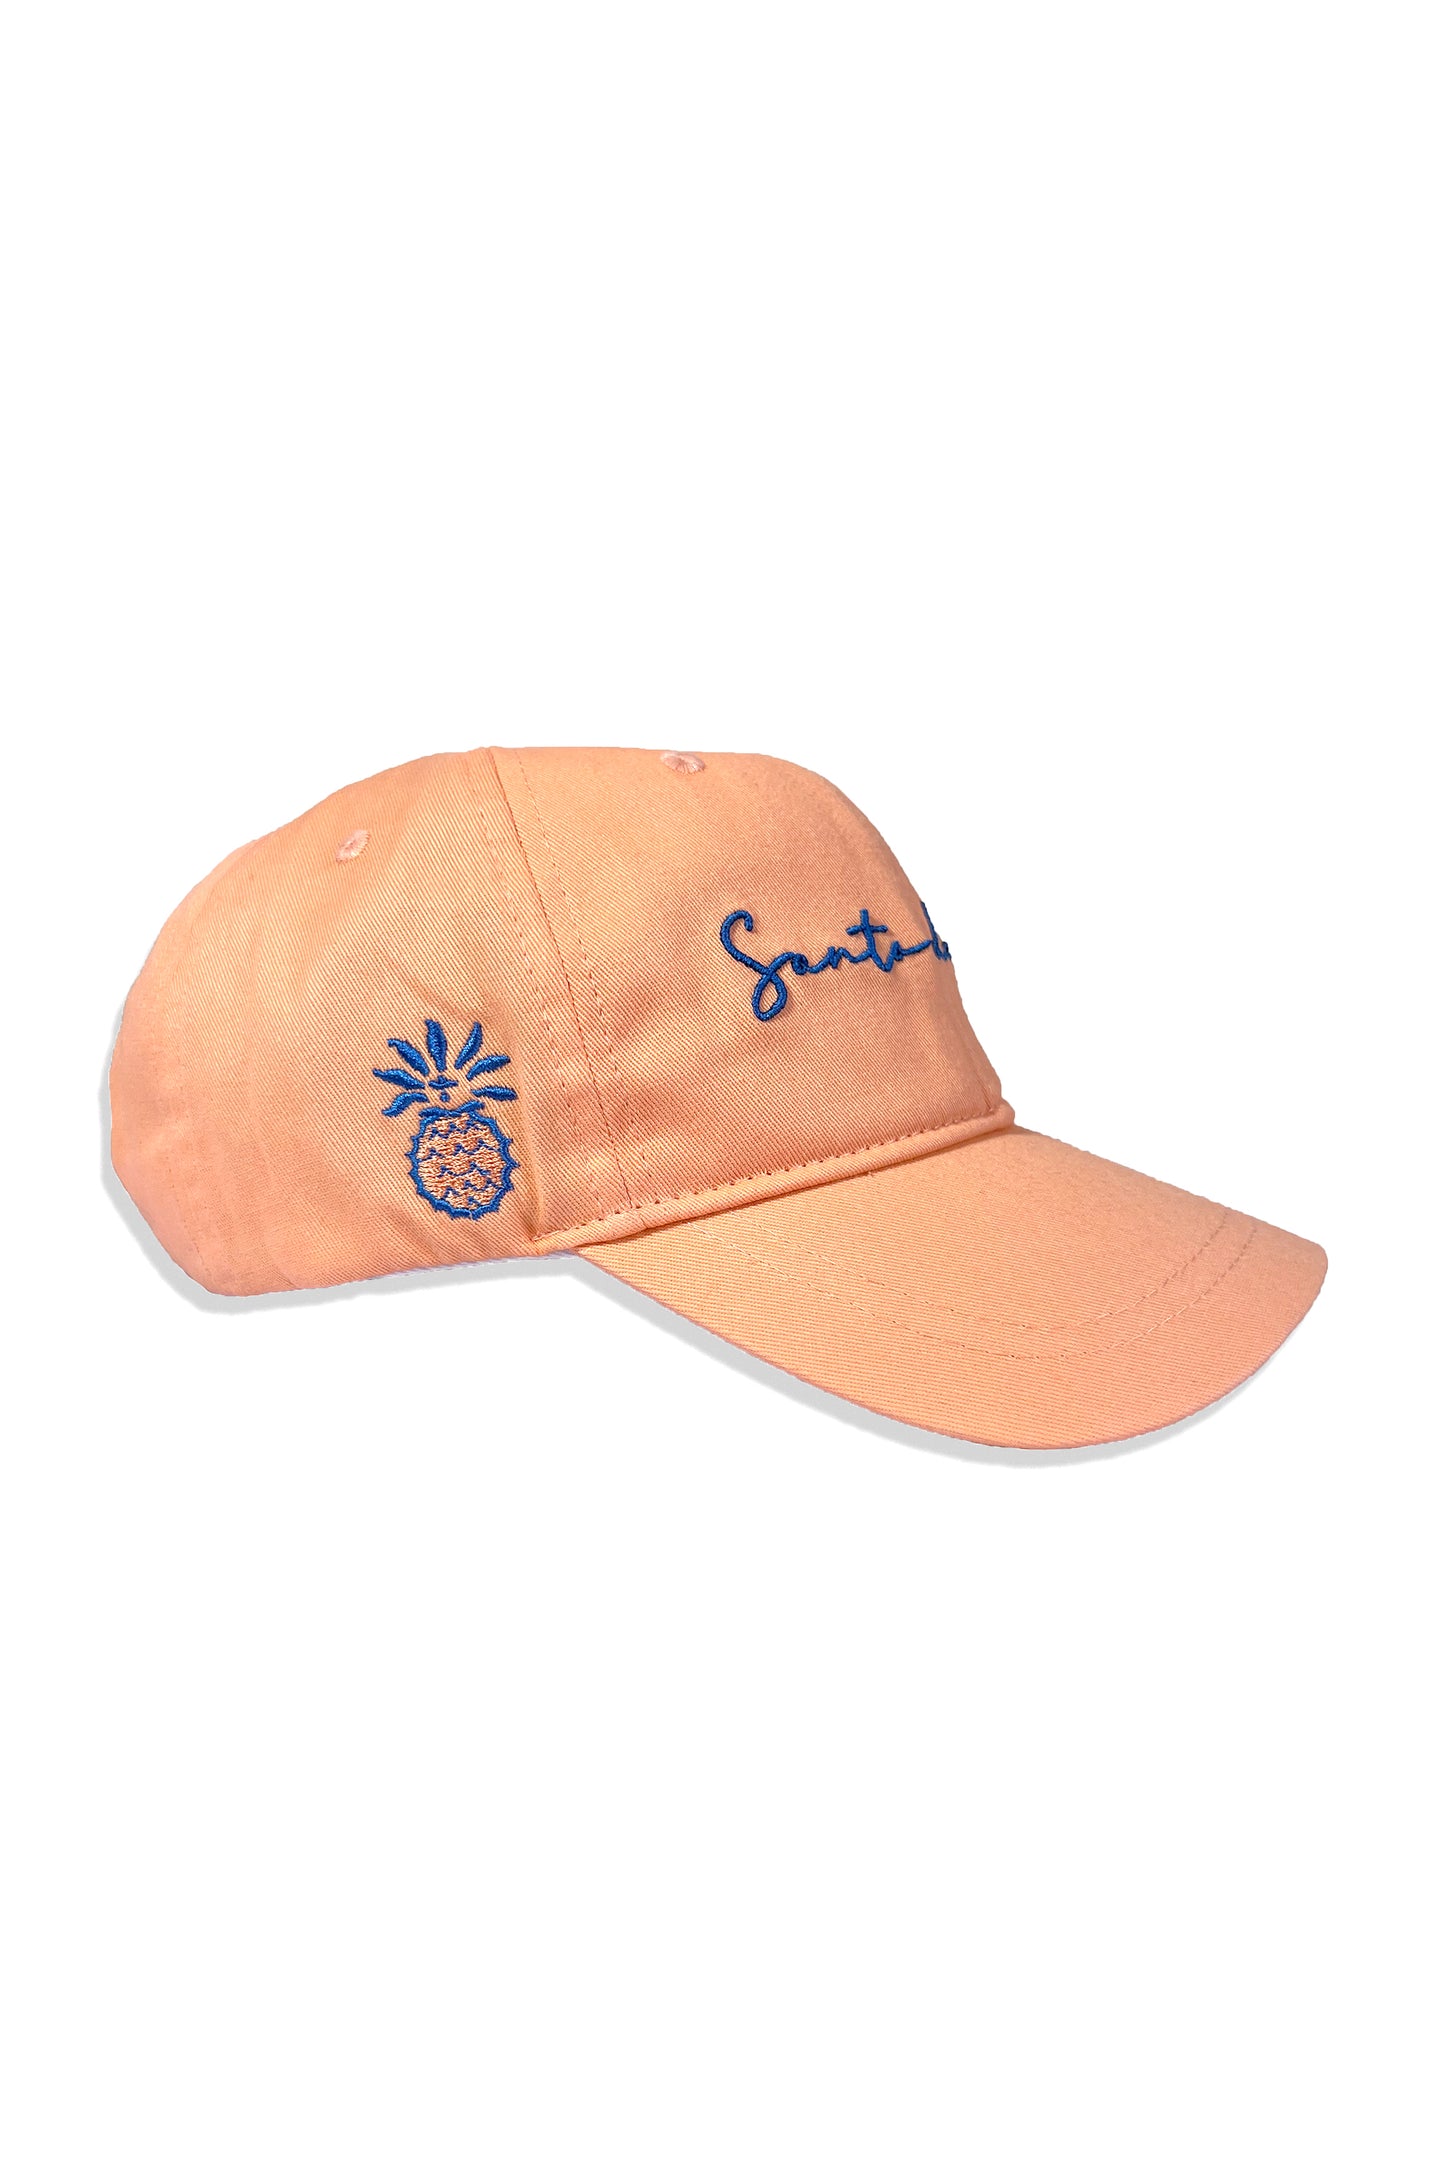 Santo del sol Hat